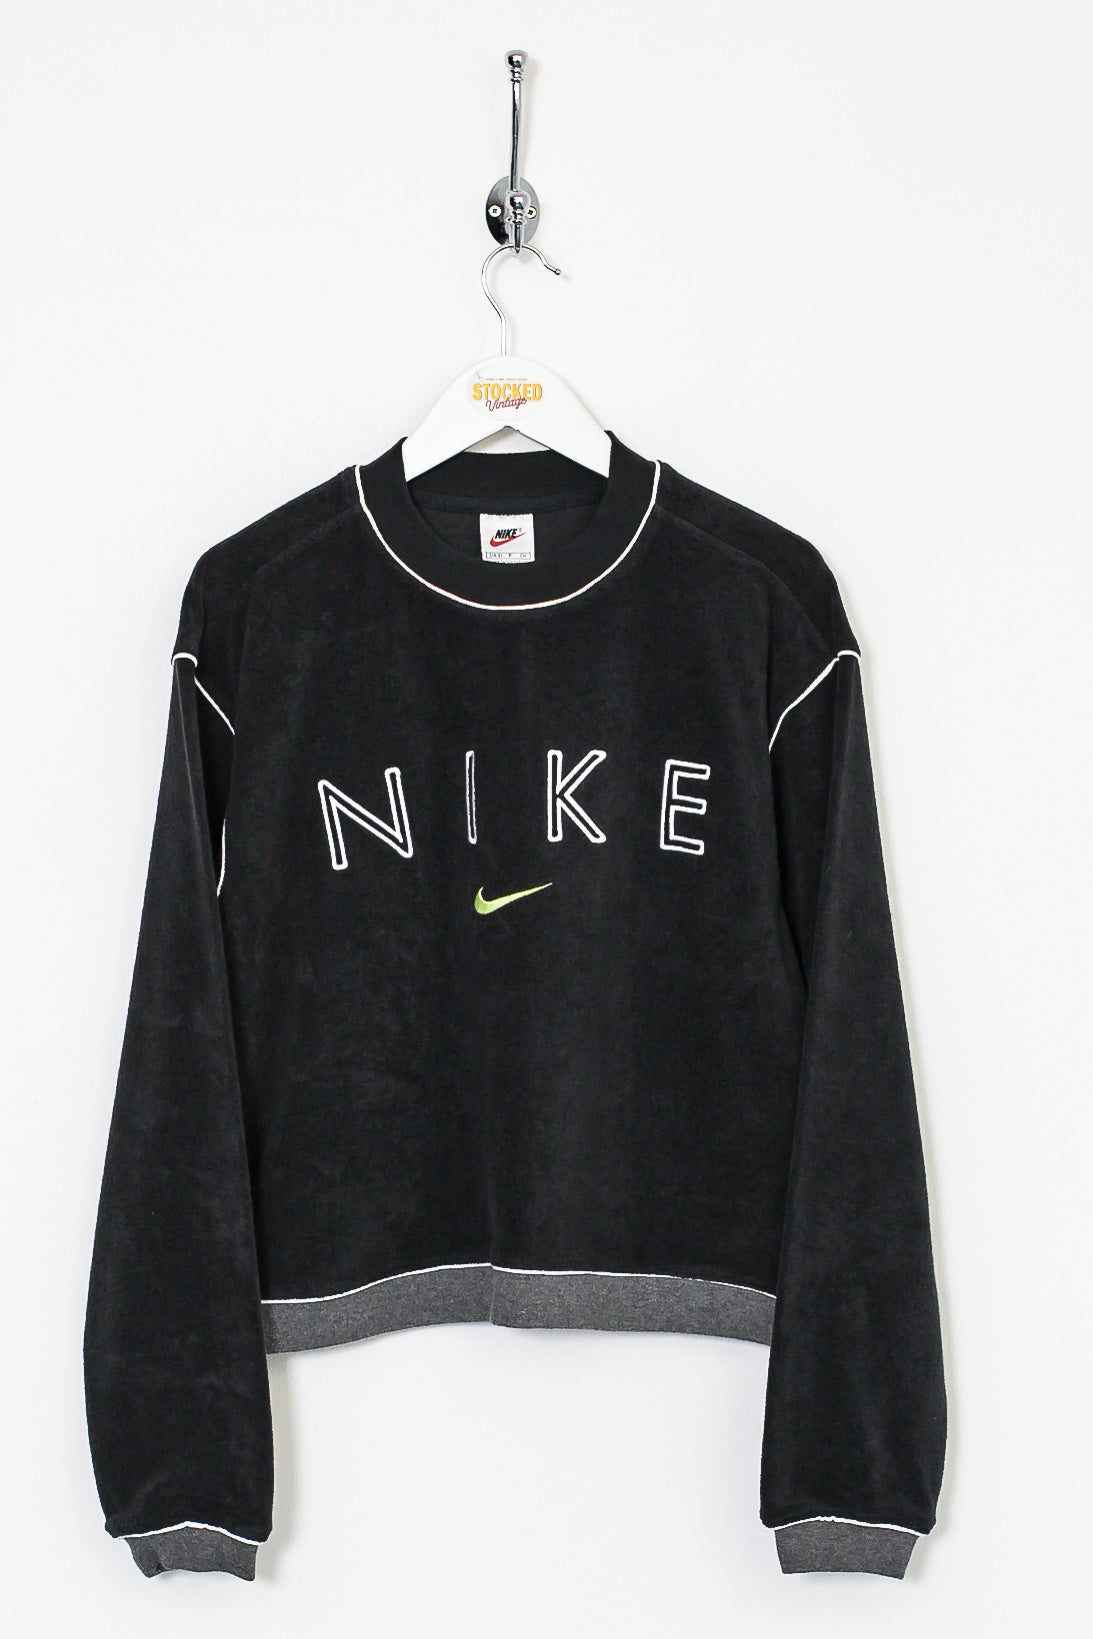 Womens 90s Nike Sweatshirt (S)